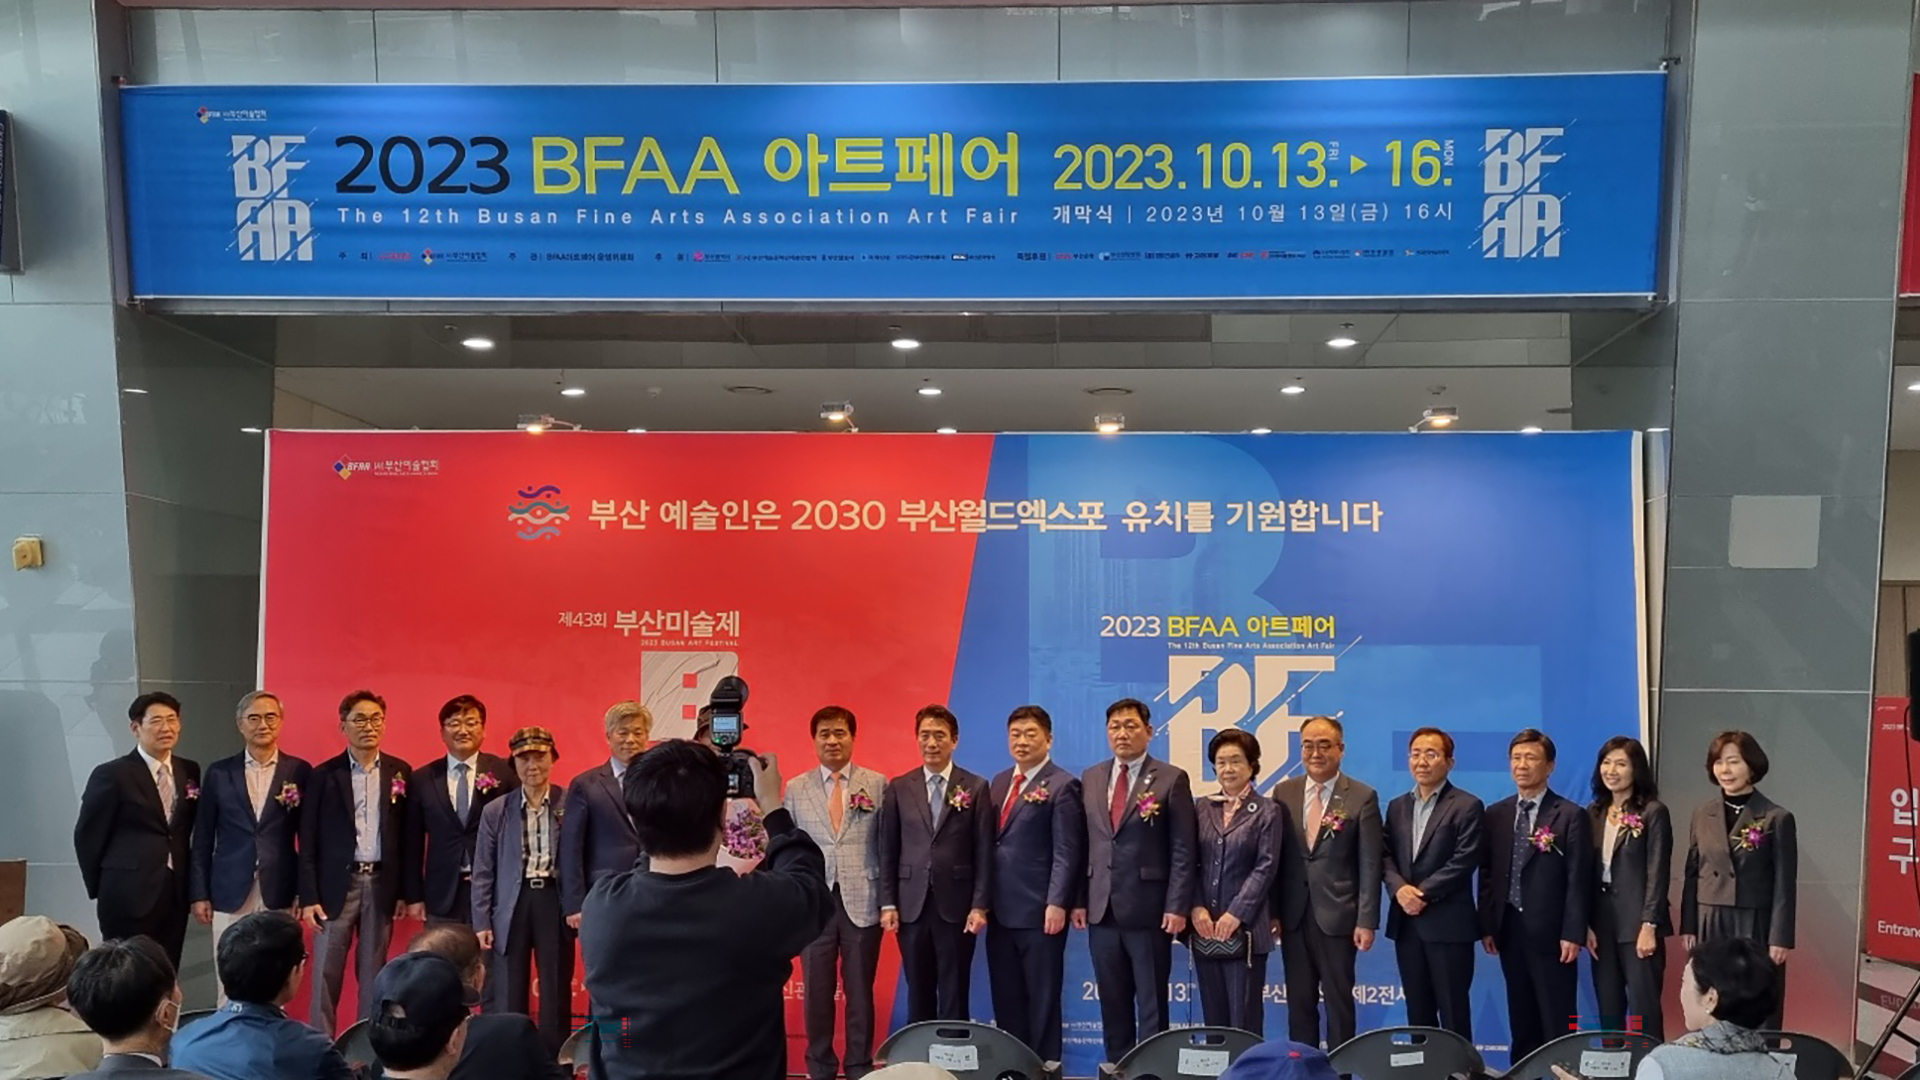 (인터넷용)2023 제43회 부산미술제, 제12회 BFAA아트페어 개최